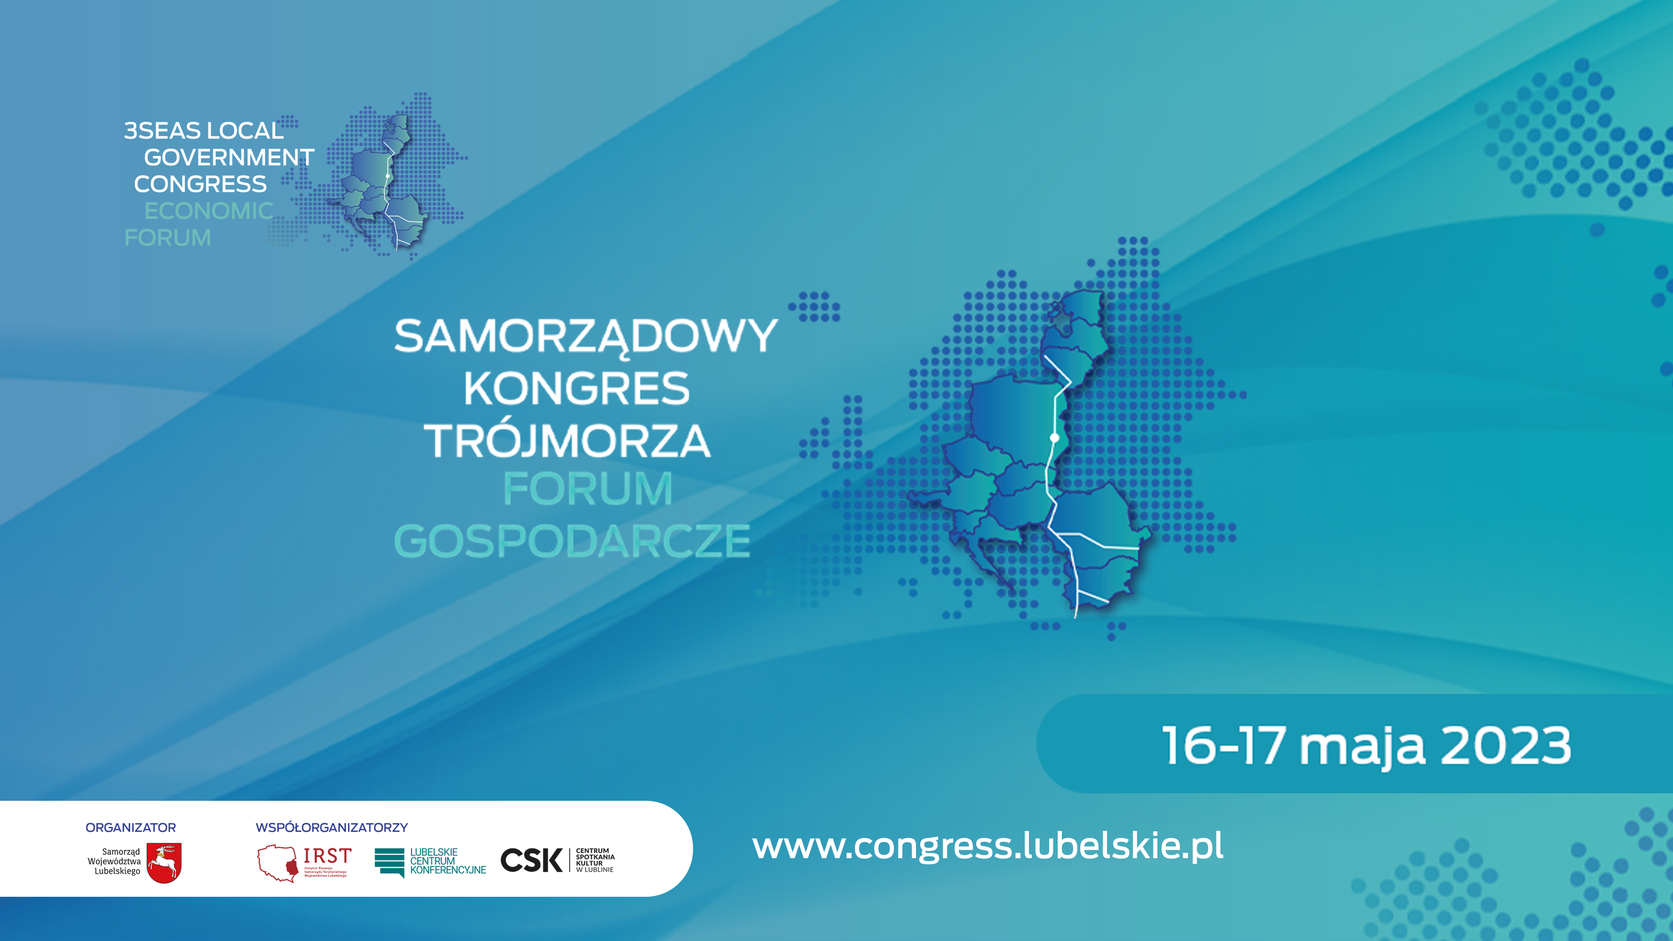 Samorządowy Kongres Trójmorza oraz Forum Gospodarcze w Lublinie